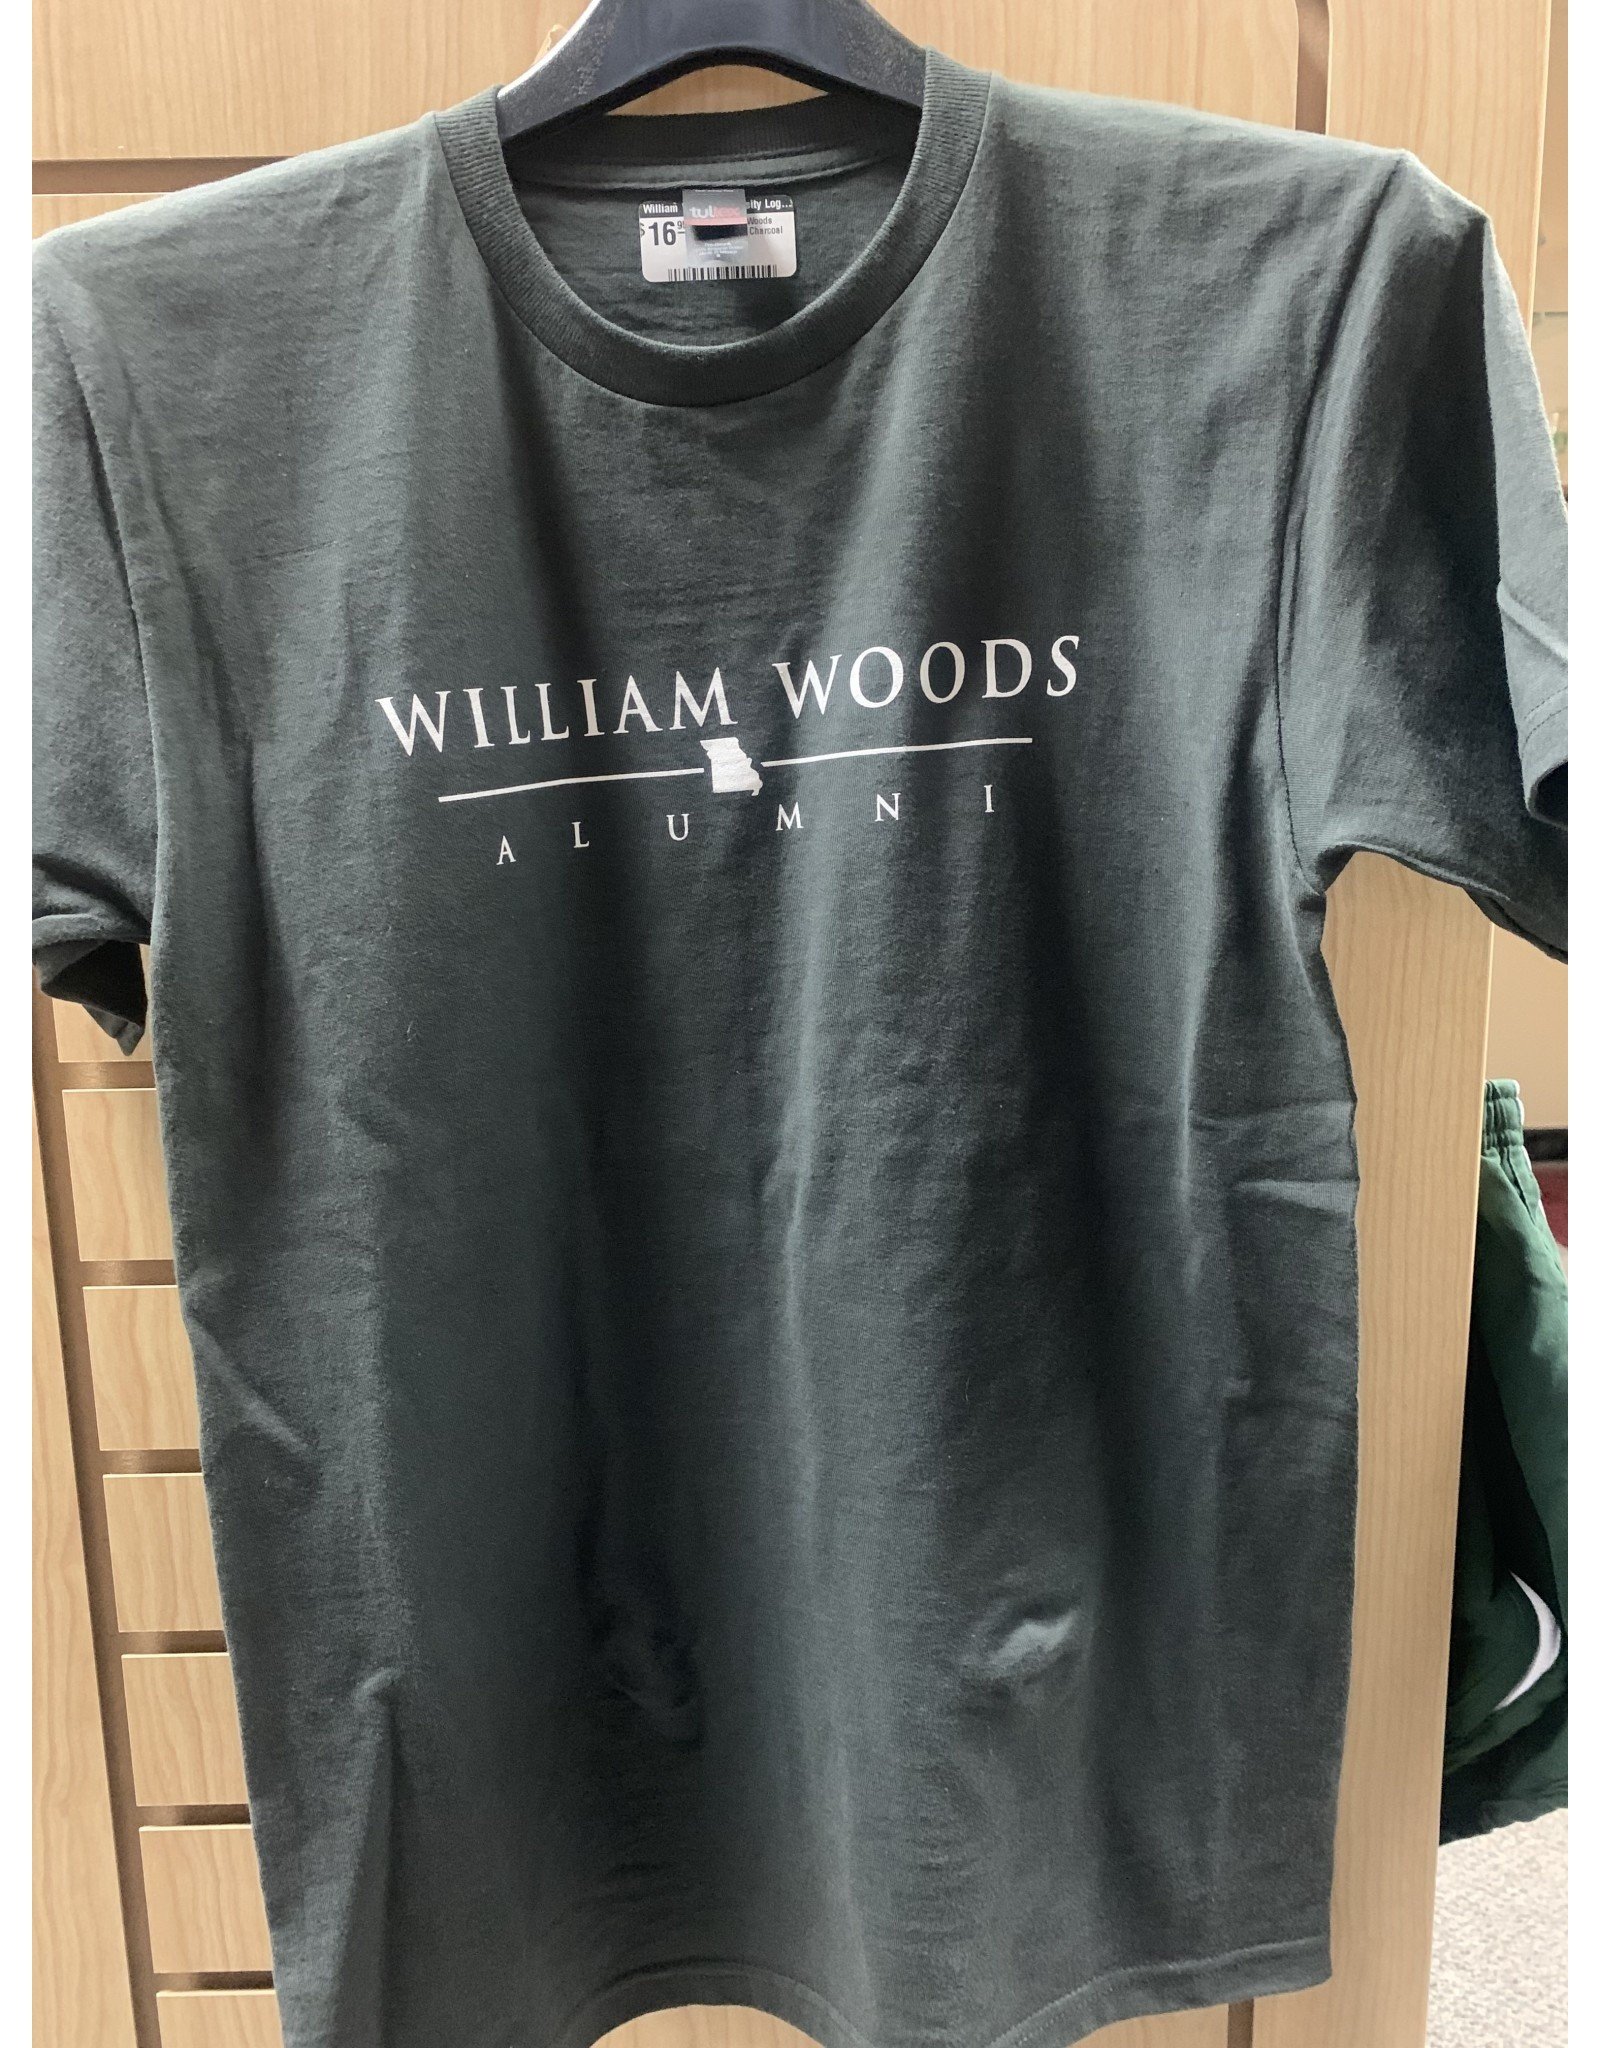 2023 William Woods Alumni tshirt